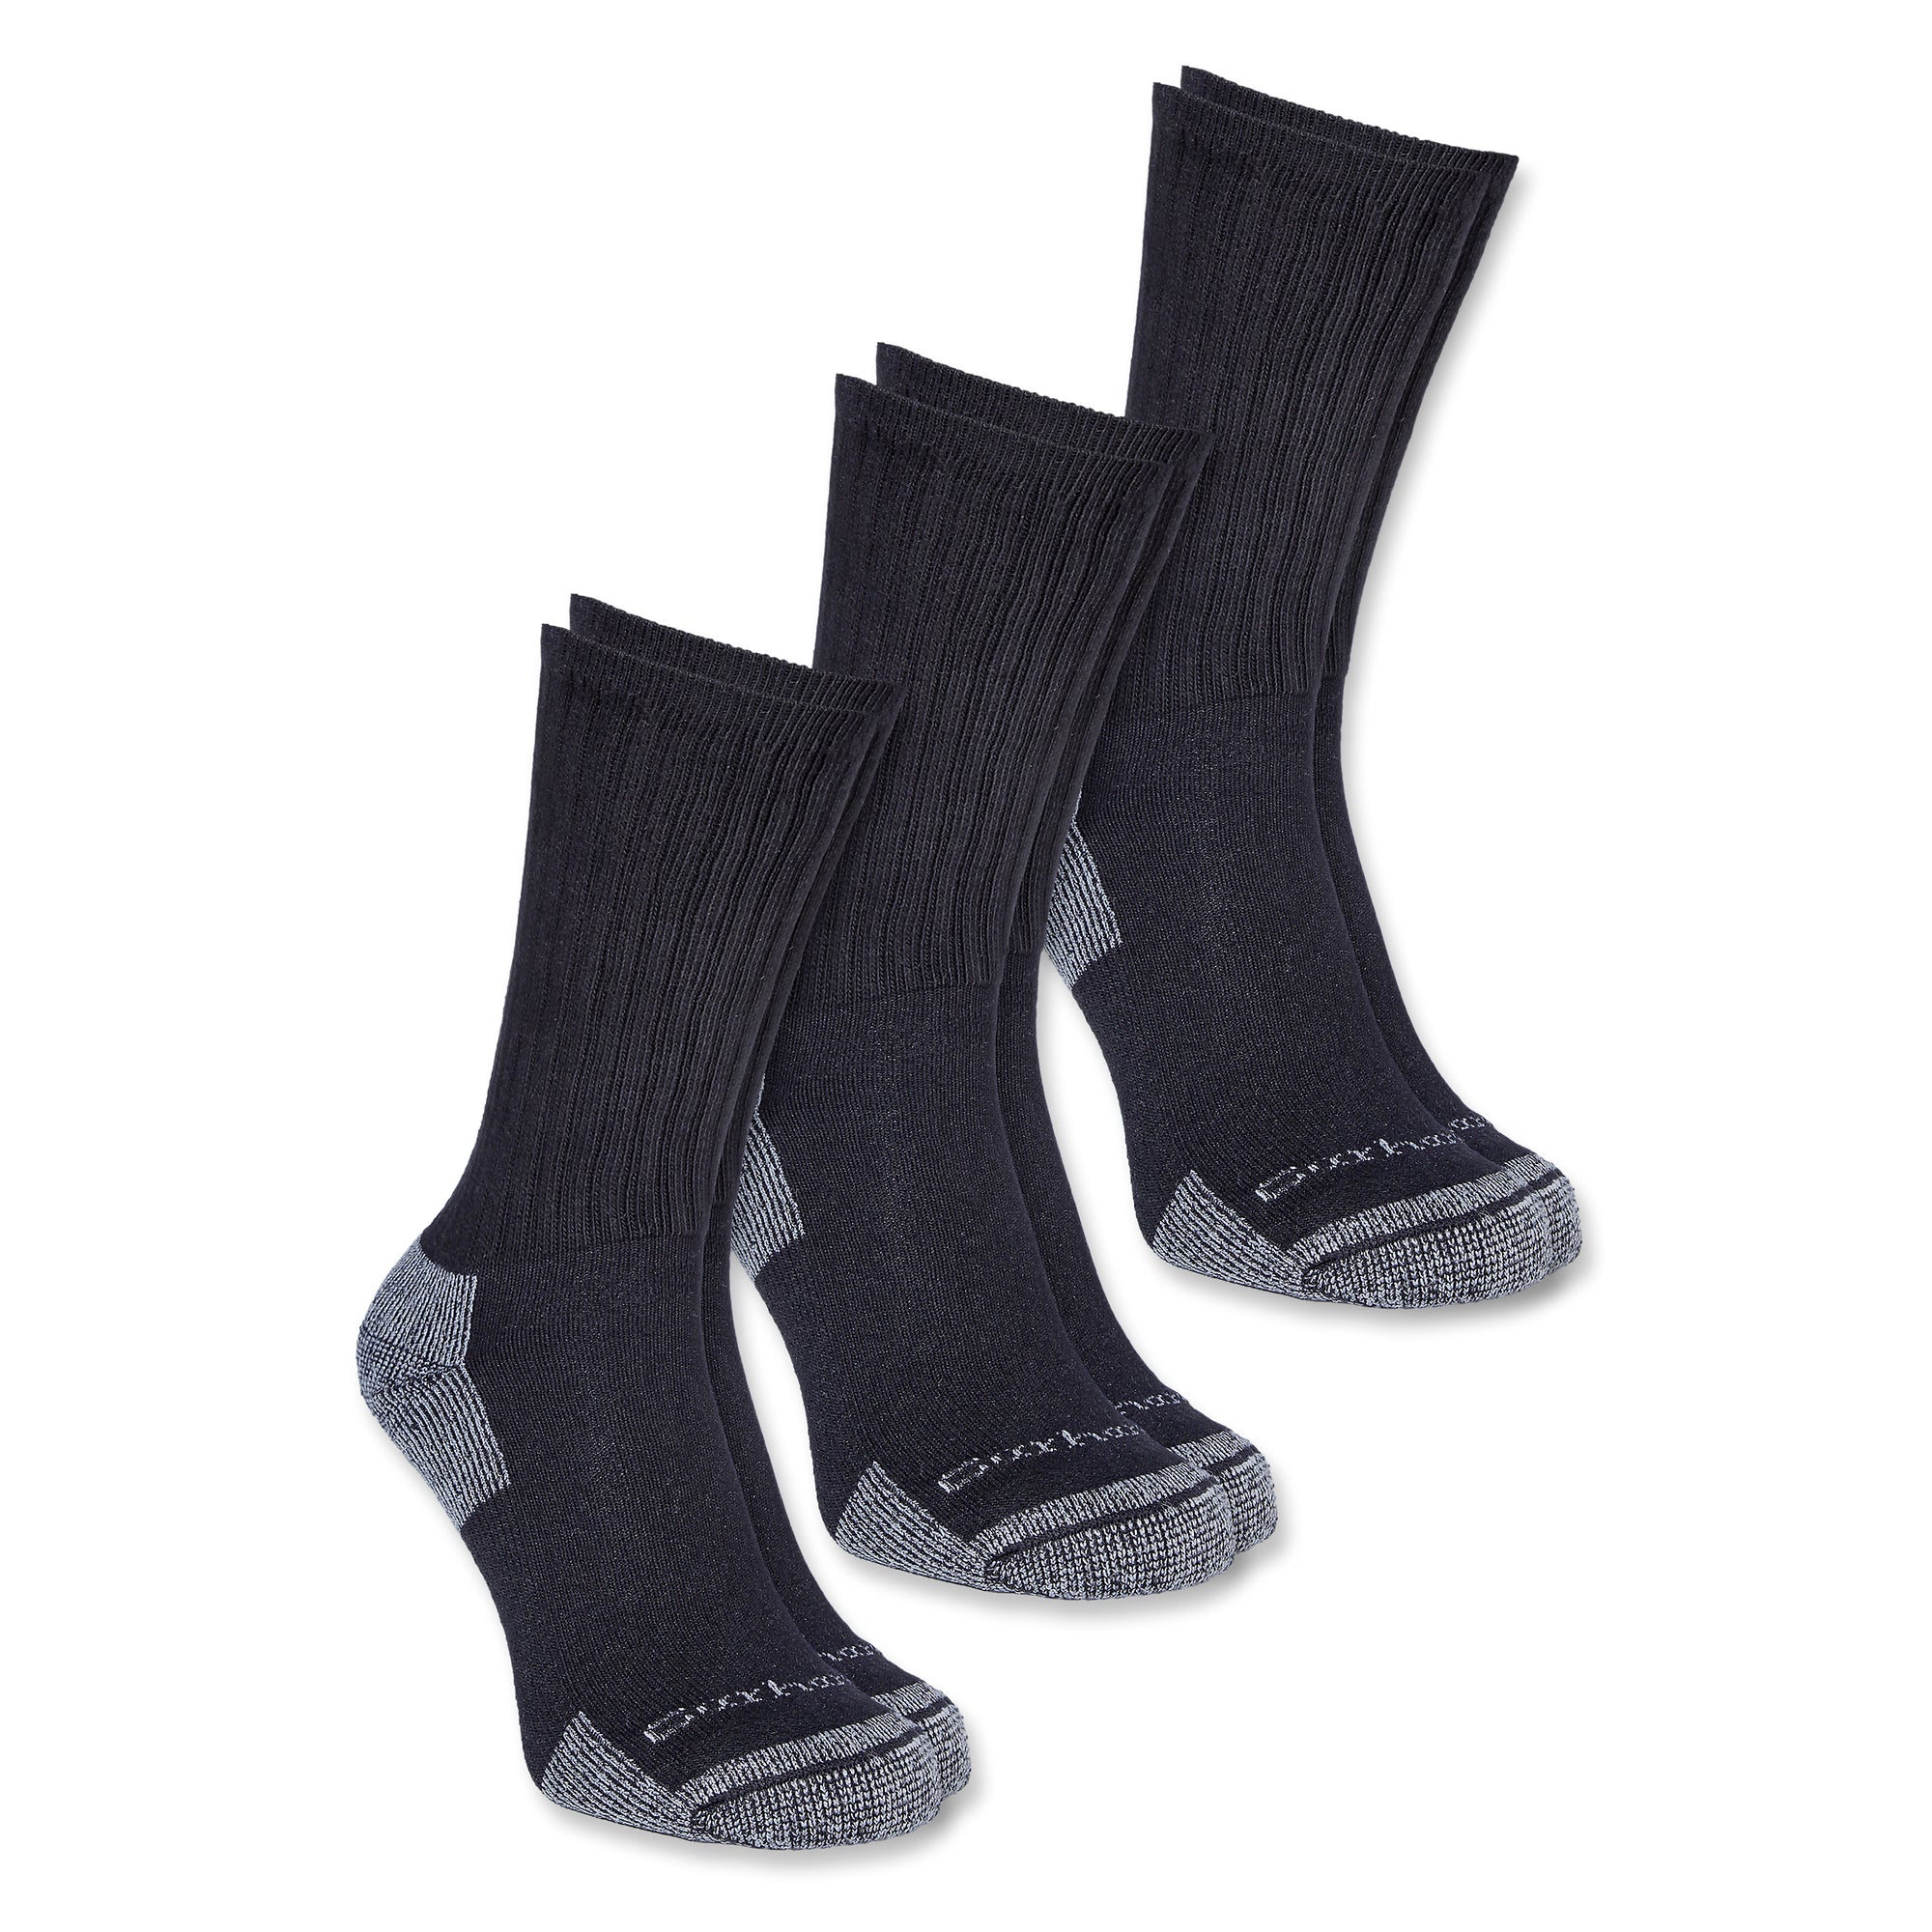 Carhartt All Season Crew Socks miesten sukat, musta